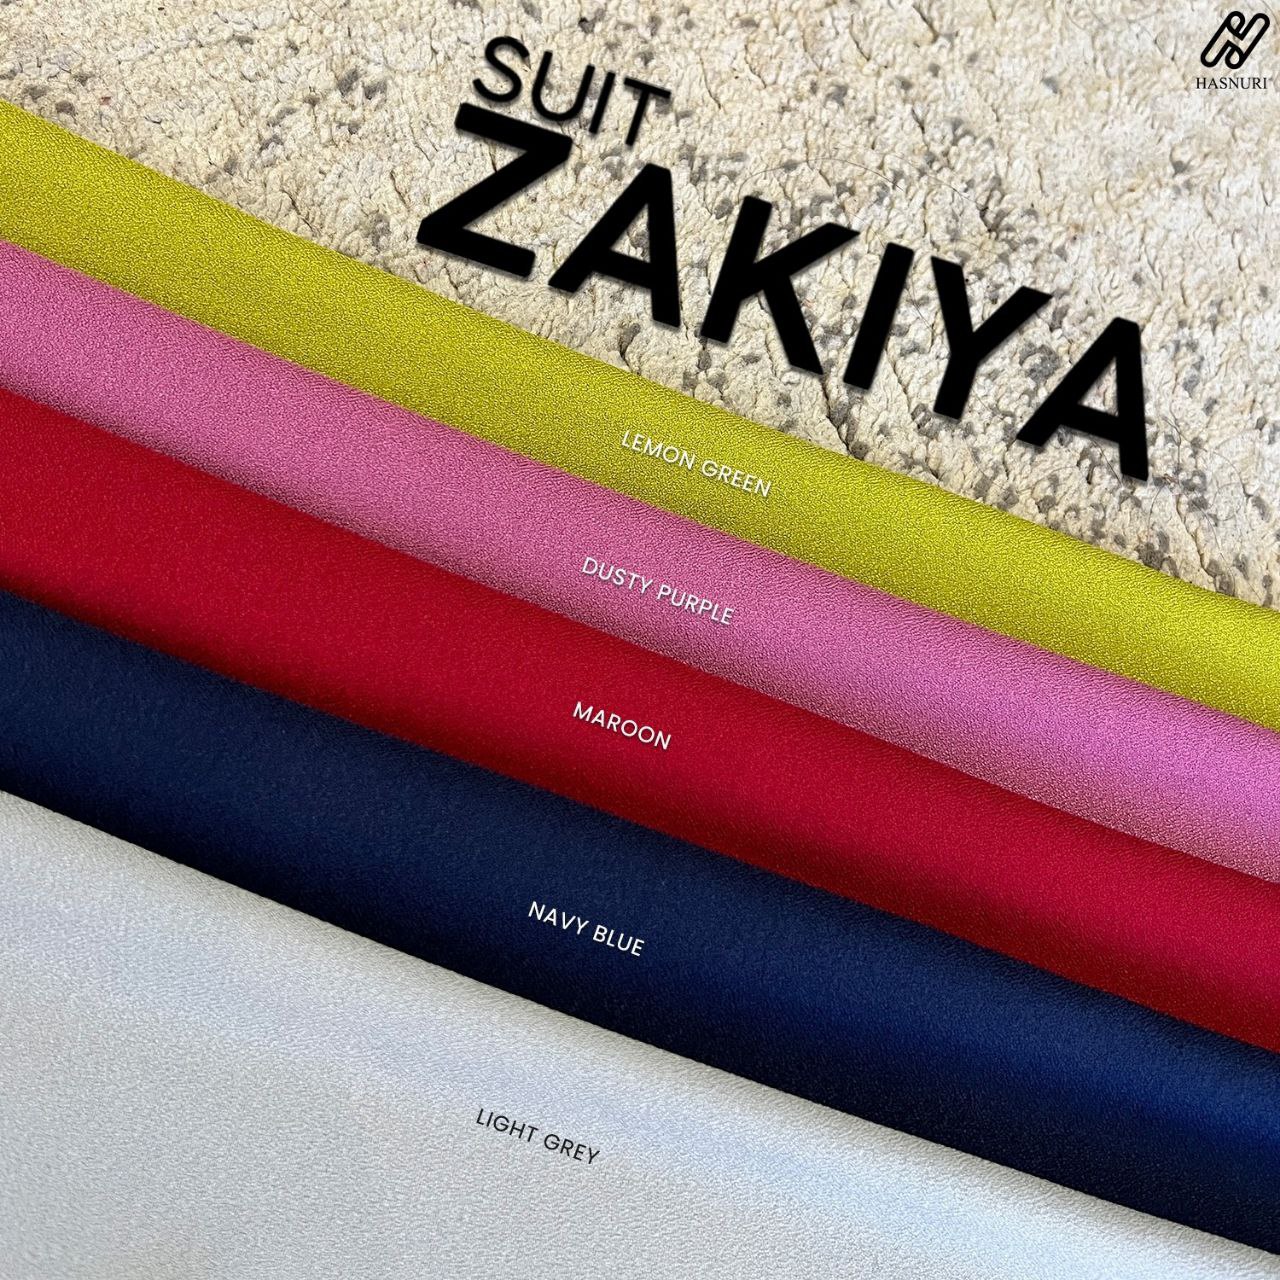 Suit Zakiya - Dusty Purple